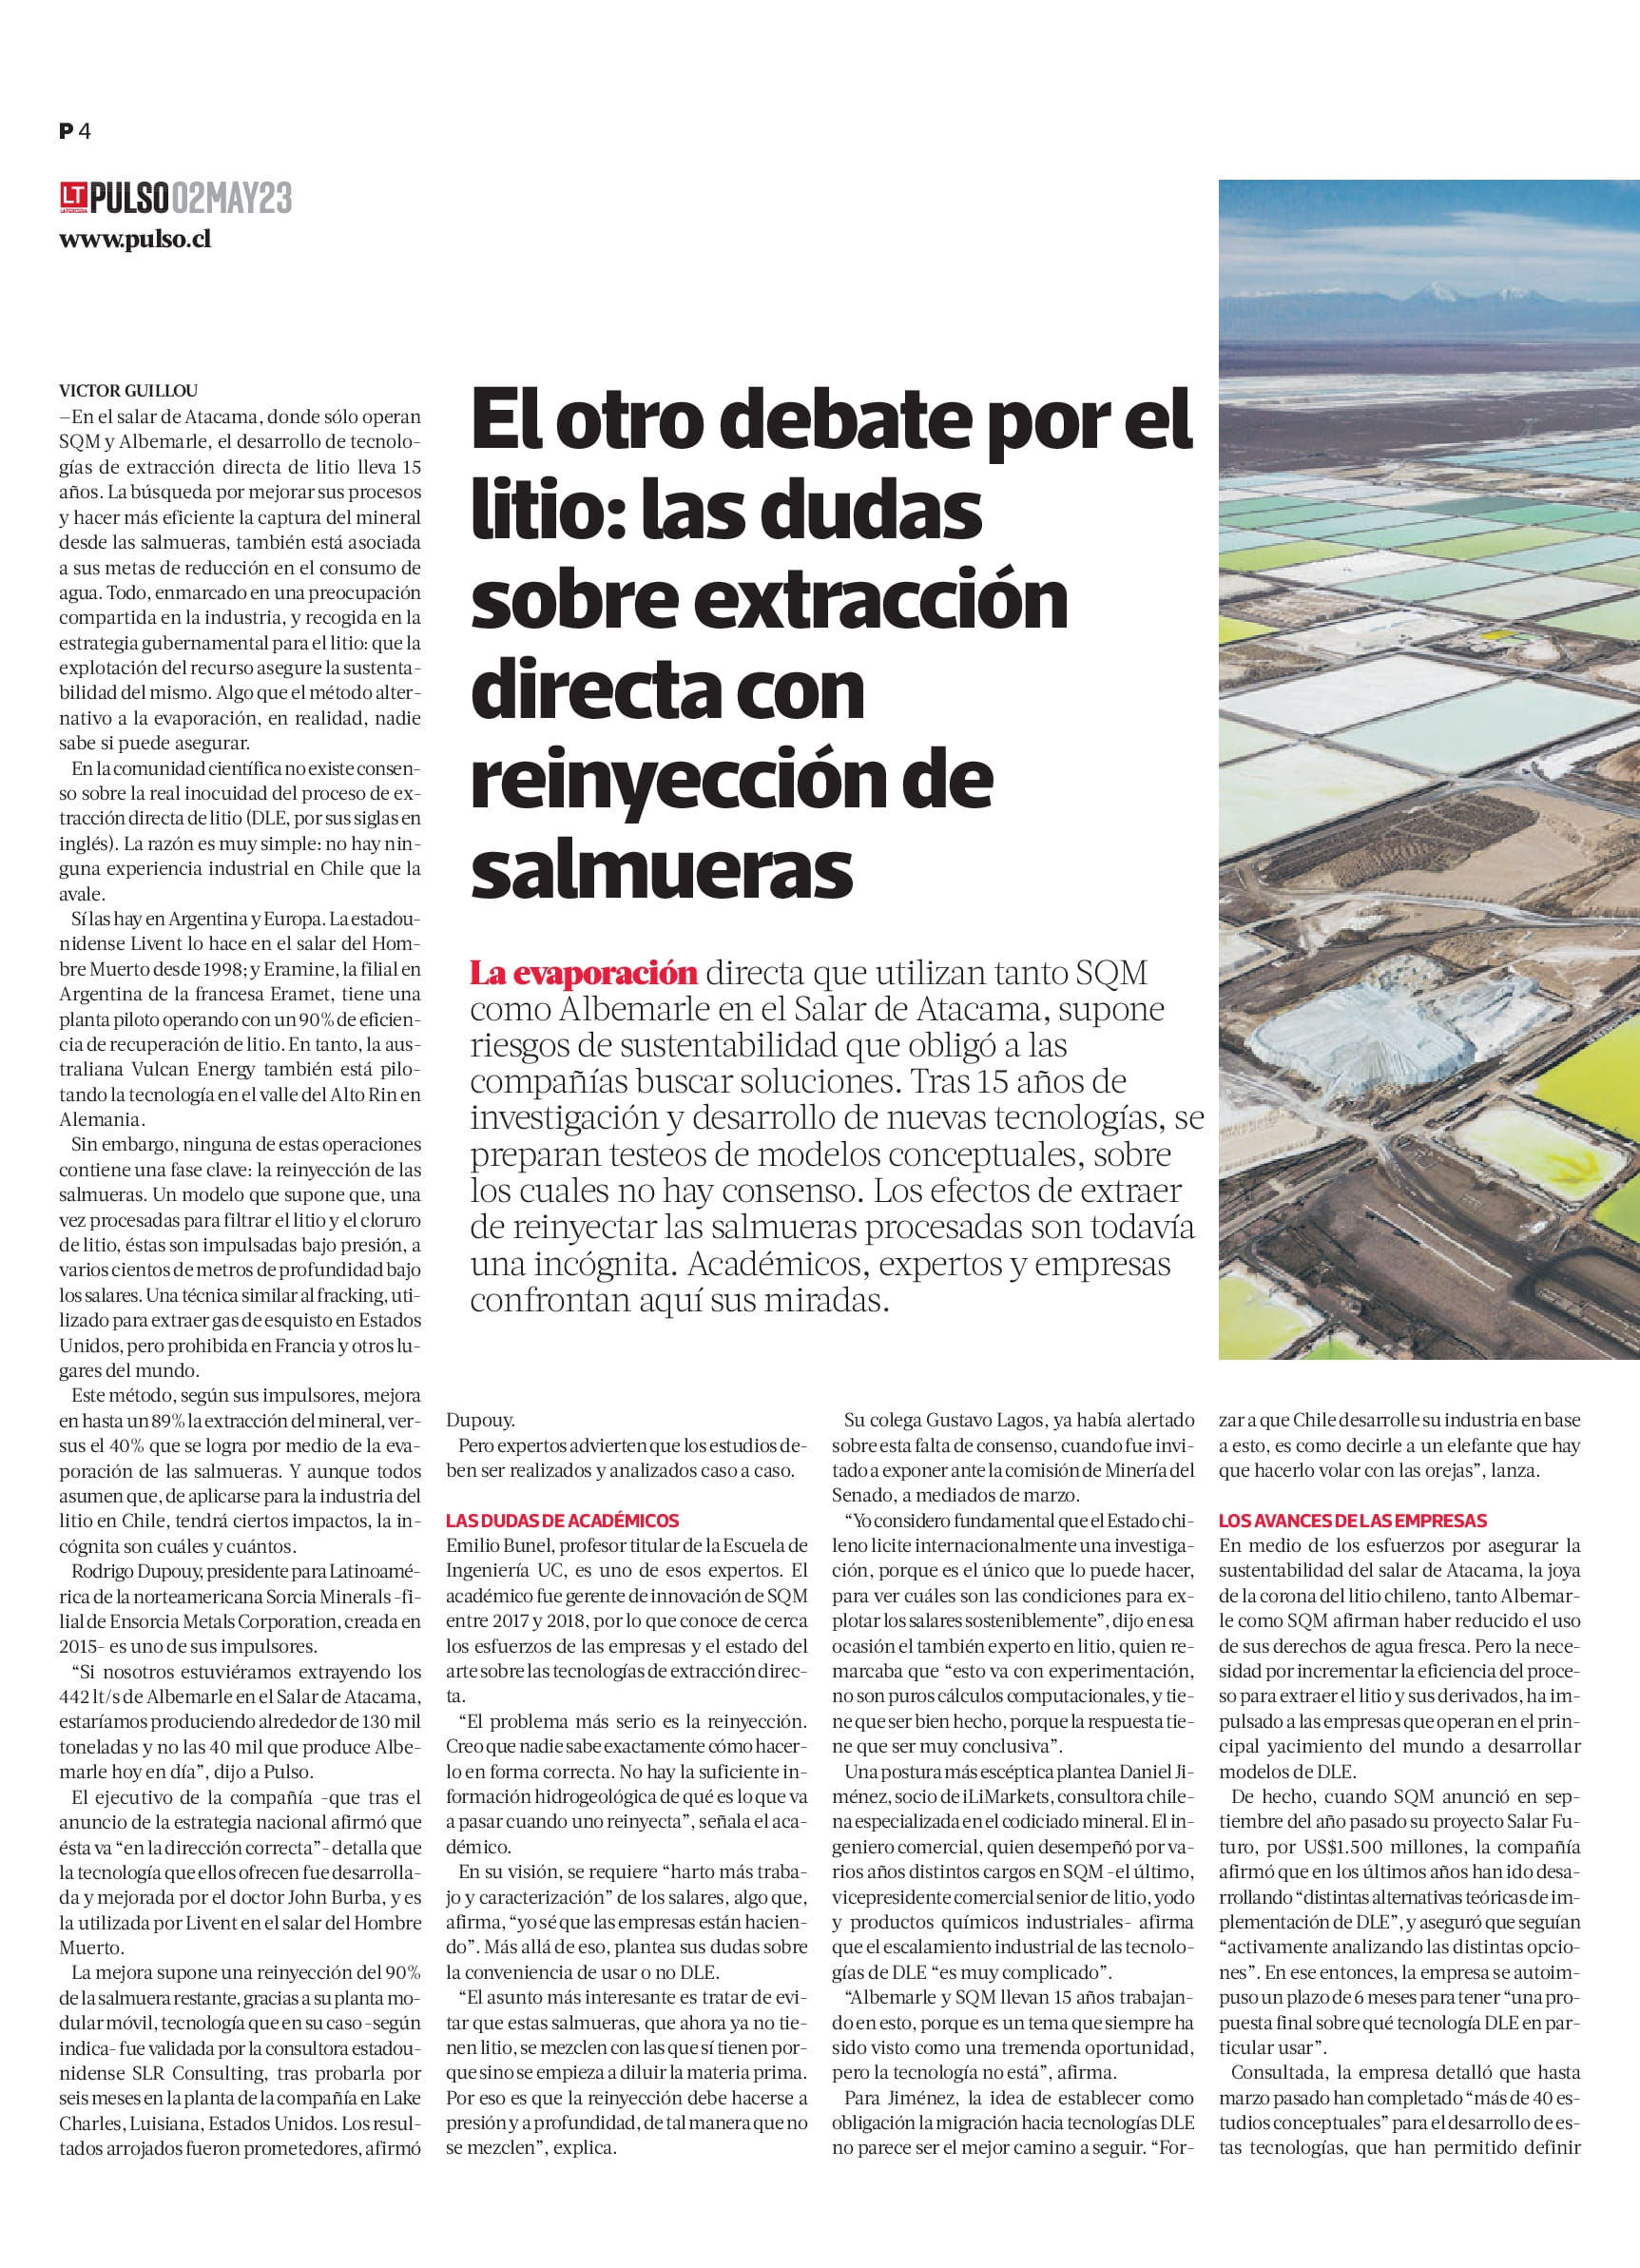 You are currently viewing El otro debate por el litio: las dudas sobre extracción directa con reinyección de salmueras